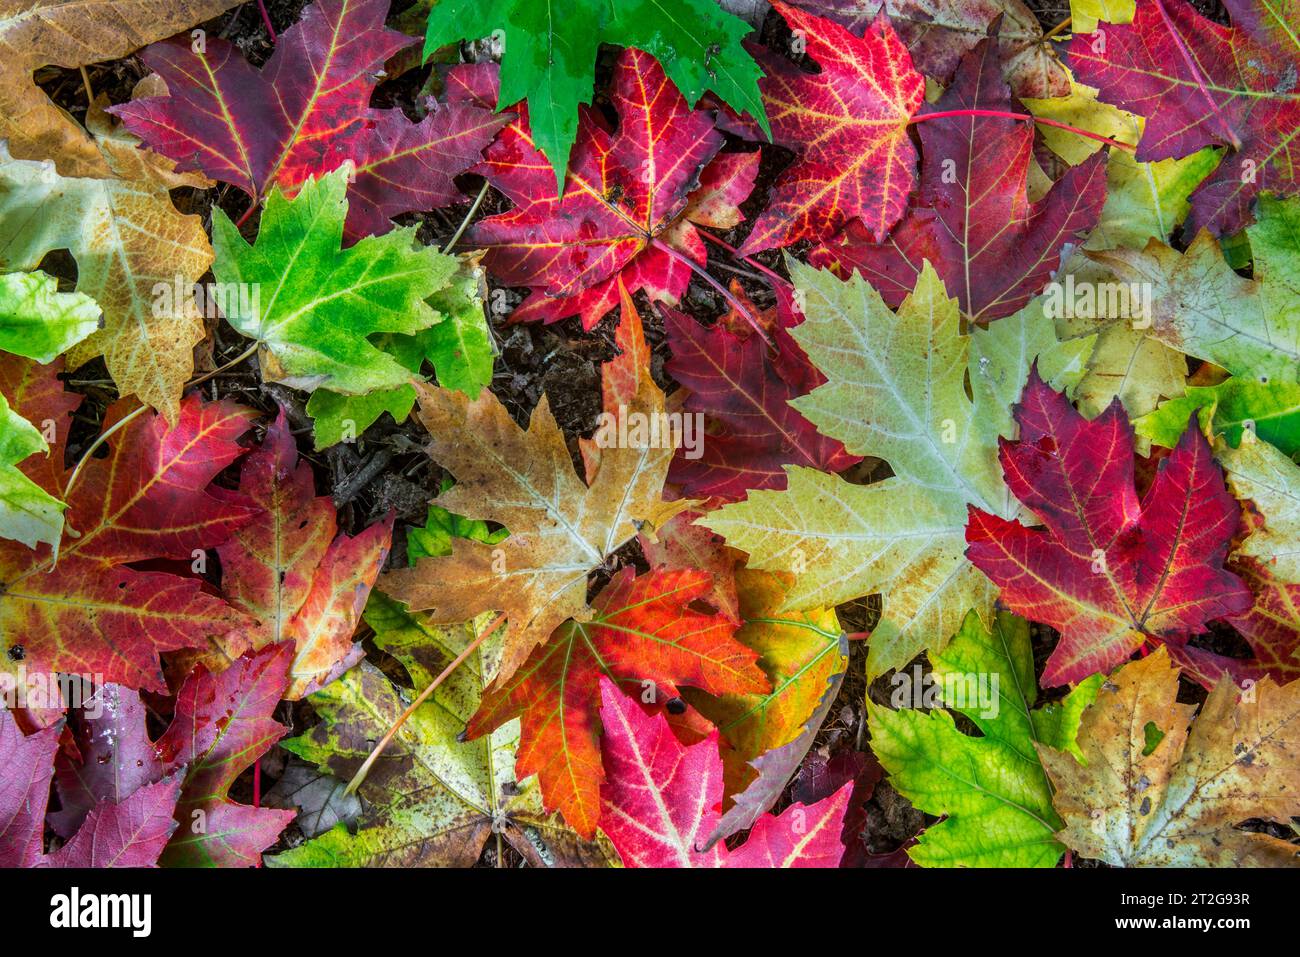 Érable argenté / érable argenté / érable blanc (Acer saccharinum), gros plan de feuilles mortes colorées sur le sol de la forêt en bois à l'automne / automne Banque D'Images